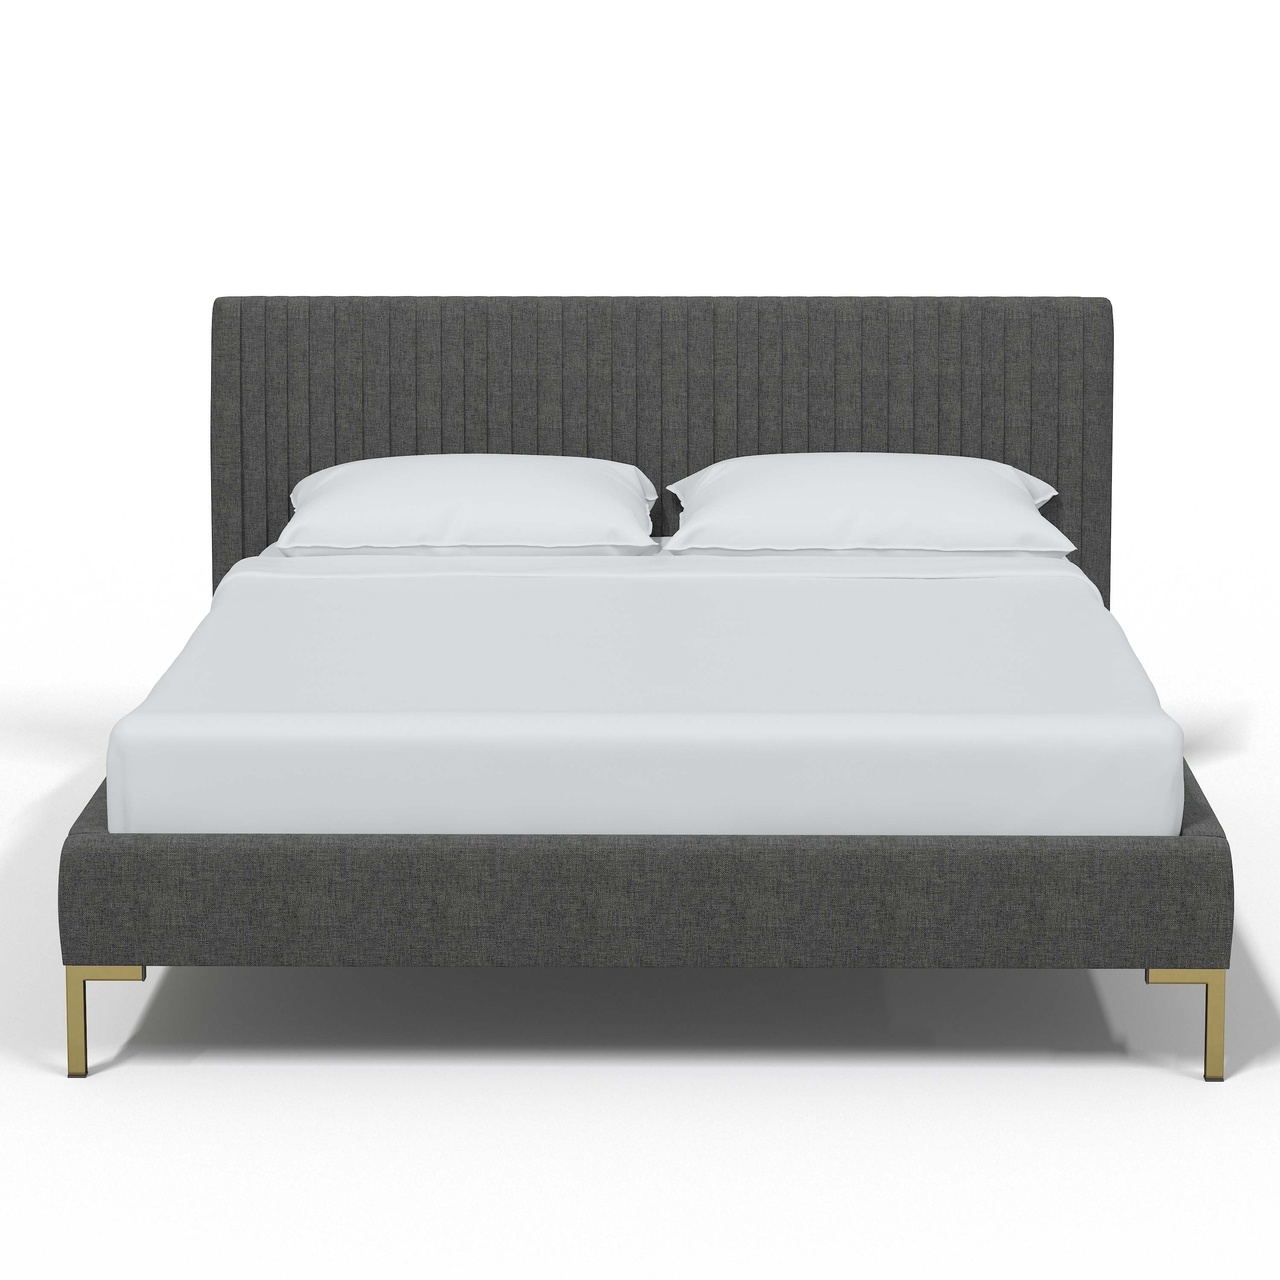 Full Nicolet Platform Bed - Image 1